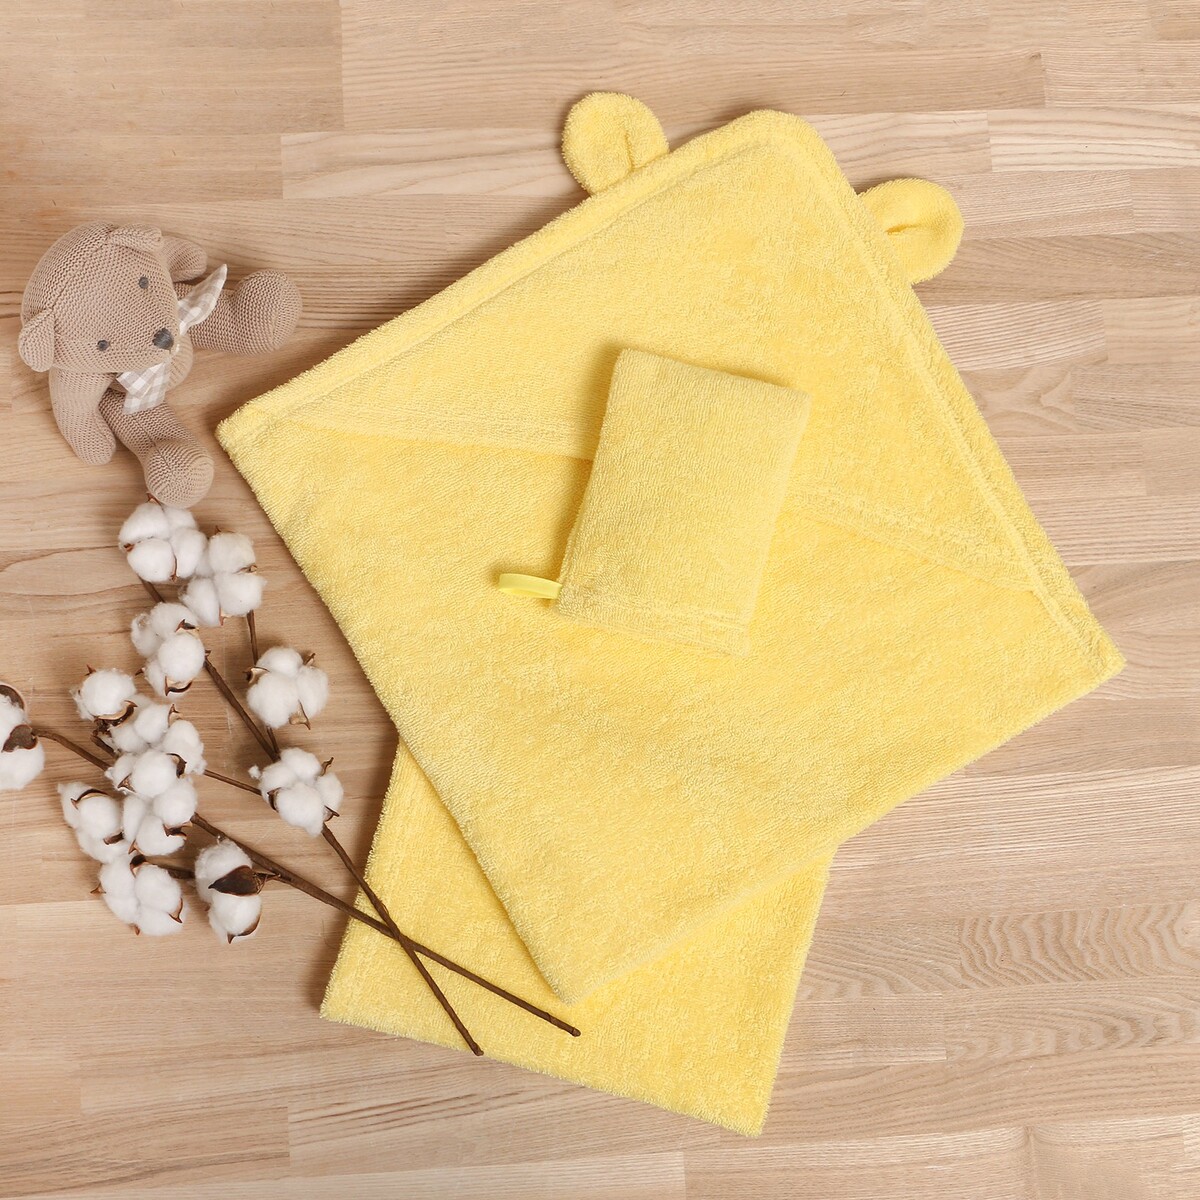 Набор для полотенце уголок рукавица набор для бани 3 предмета шапка рукавица коврик никитинская мануфактура все индейцы как индейцы на015